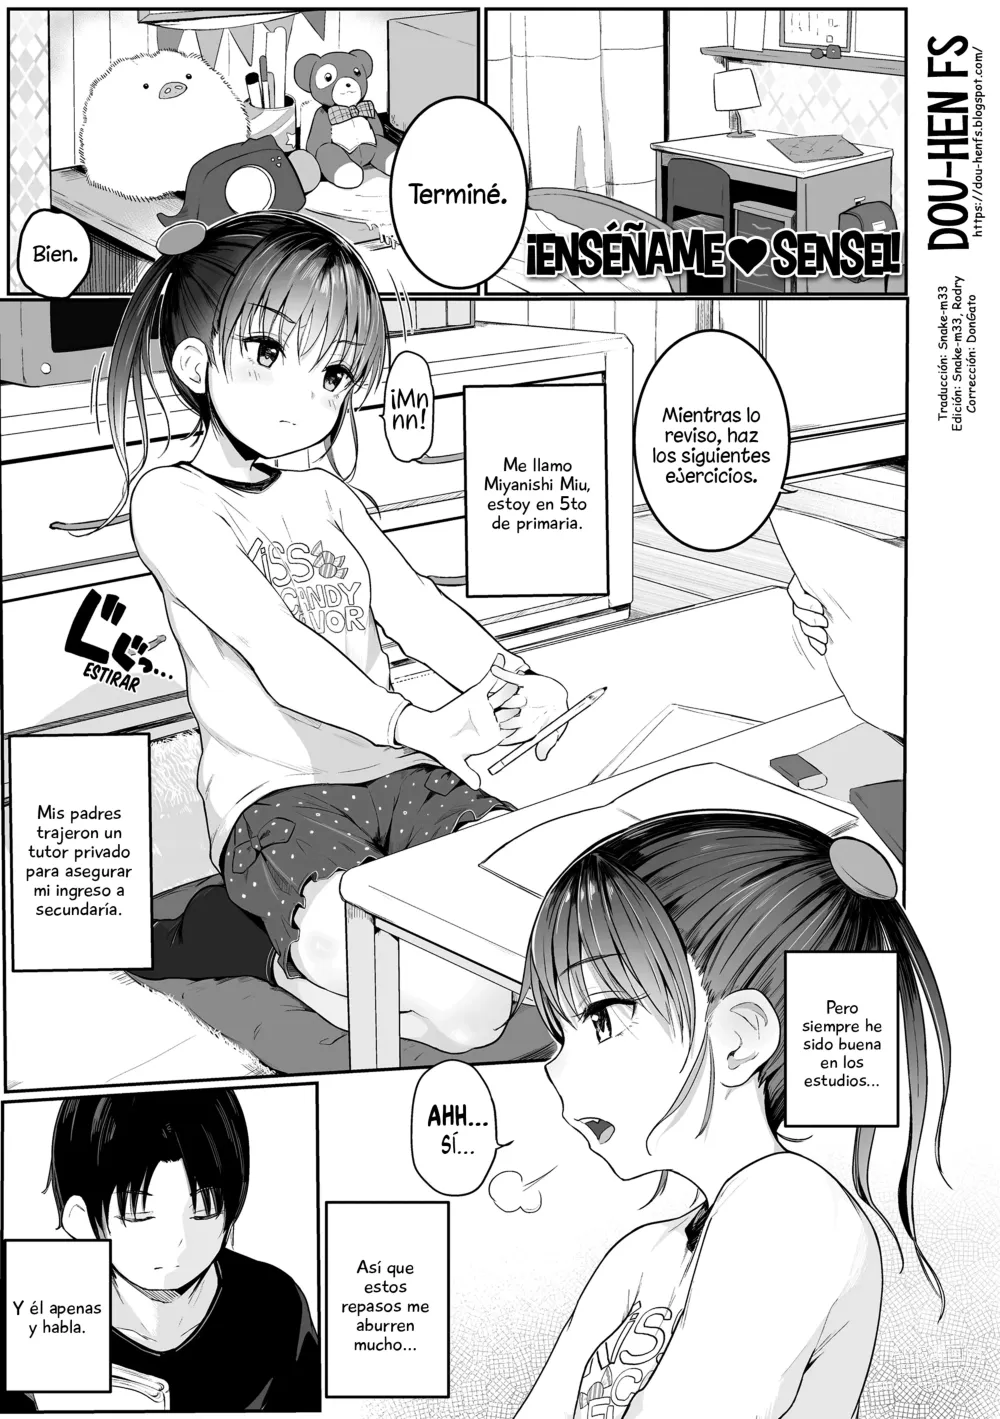 Page 1 of manga ¡Enséñame❤Sensei!